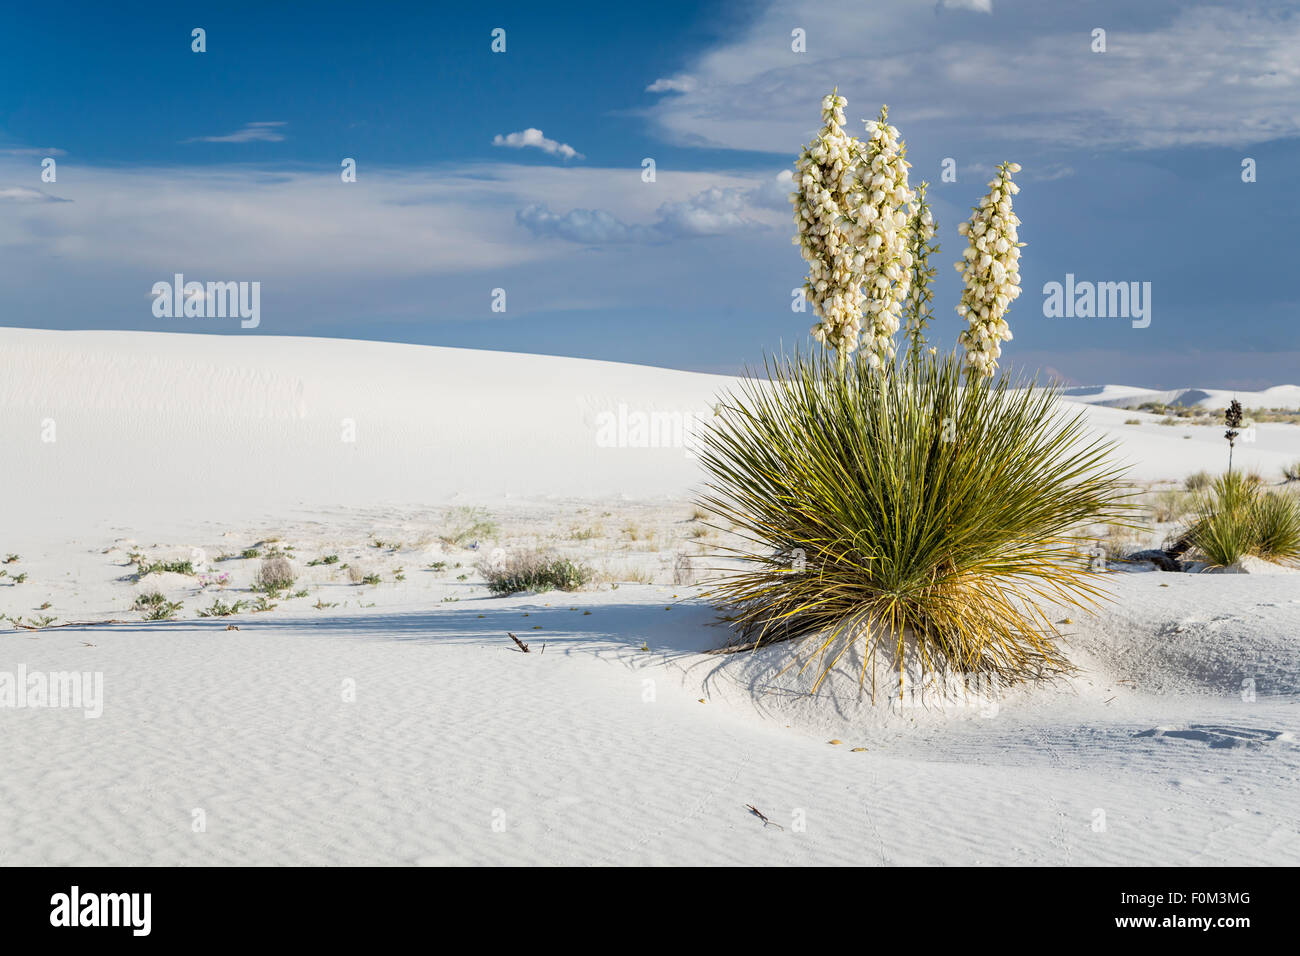 Fioritura delle piante di yucca in gesso bianco dune di sabbia bianca monumento nazionale vicino a Alamogordo, Nuovo Messico, Stati Uniti d'America. Foto Stock